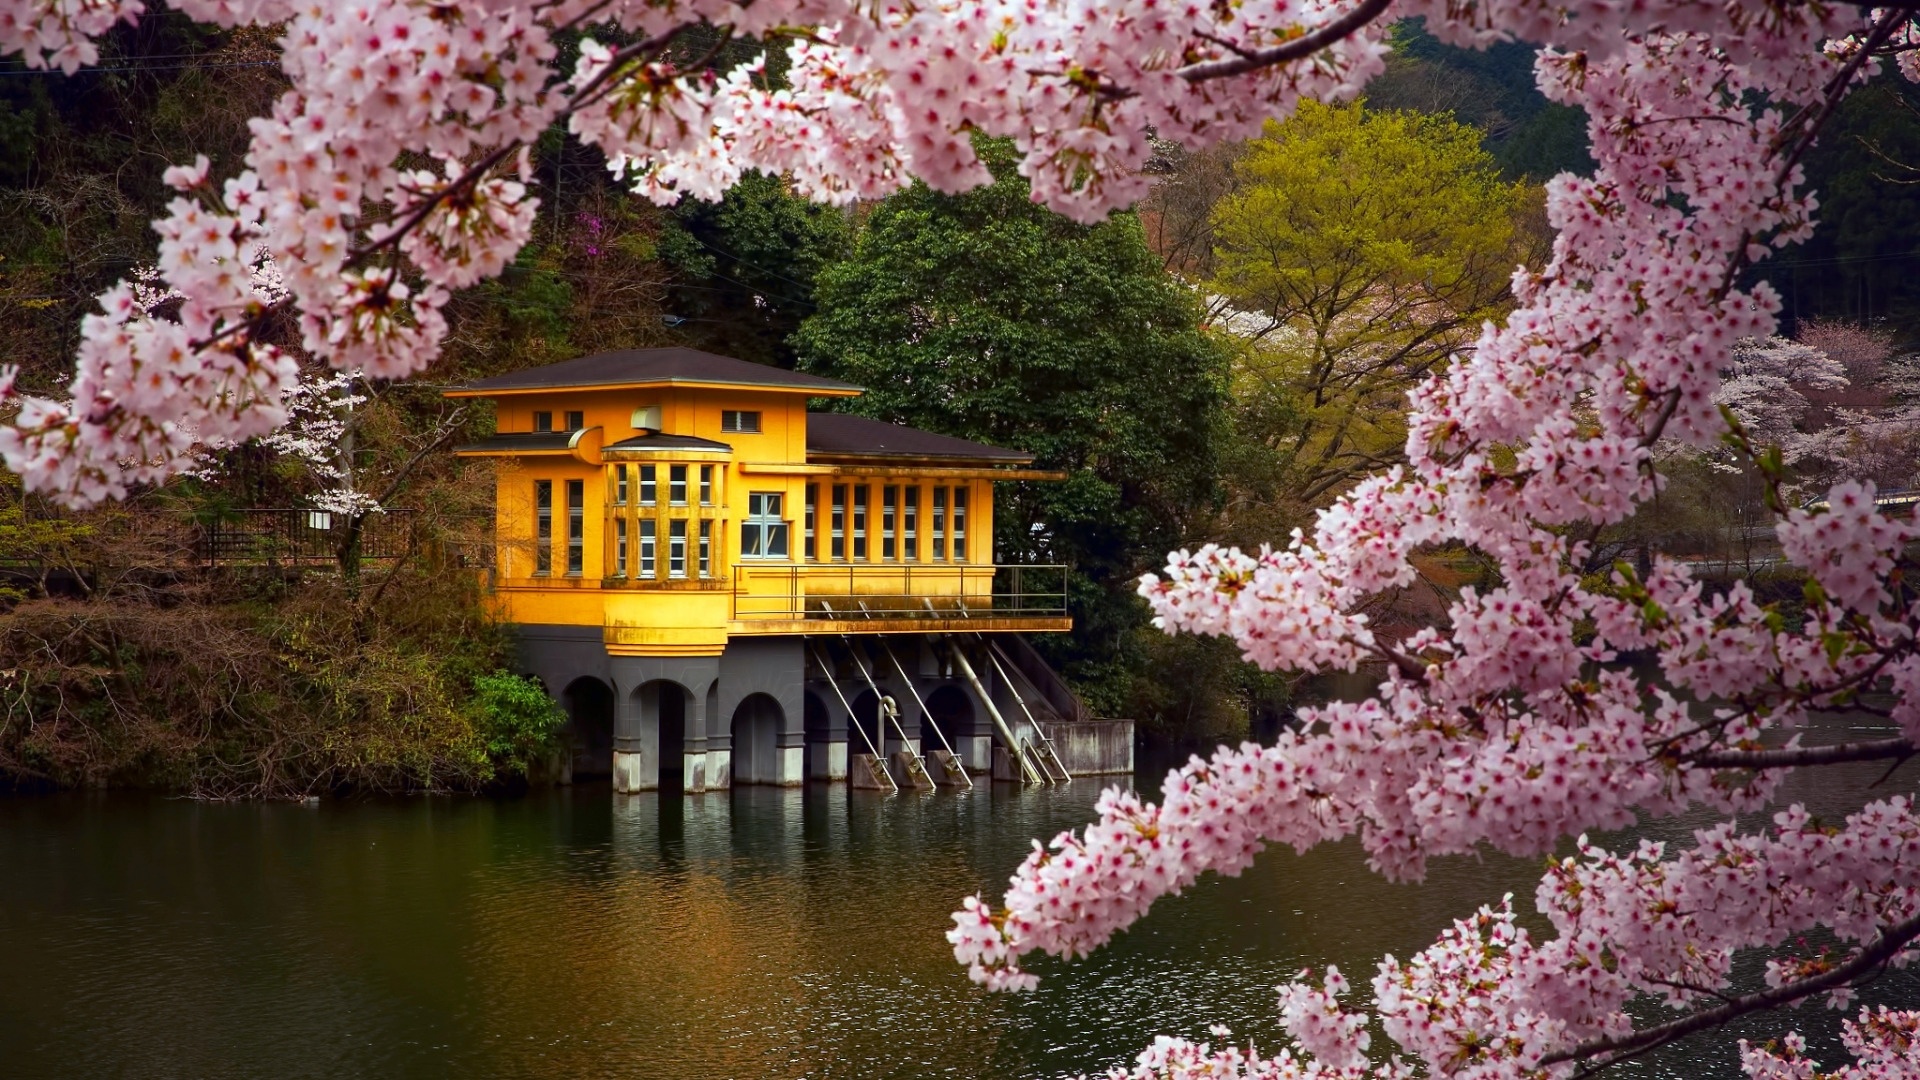 Sakura Blossom Wallpaper